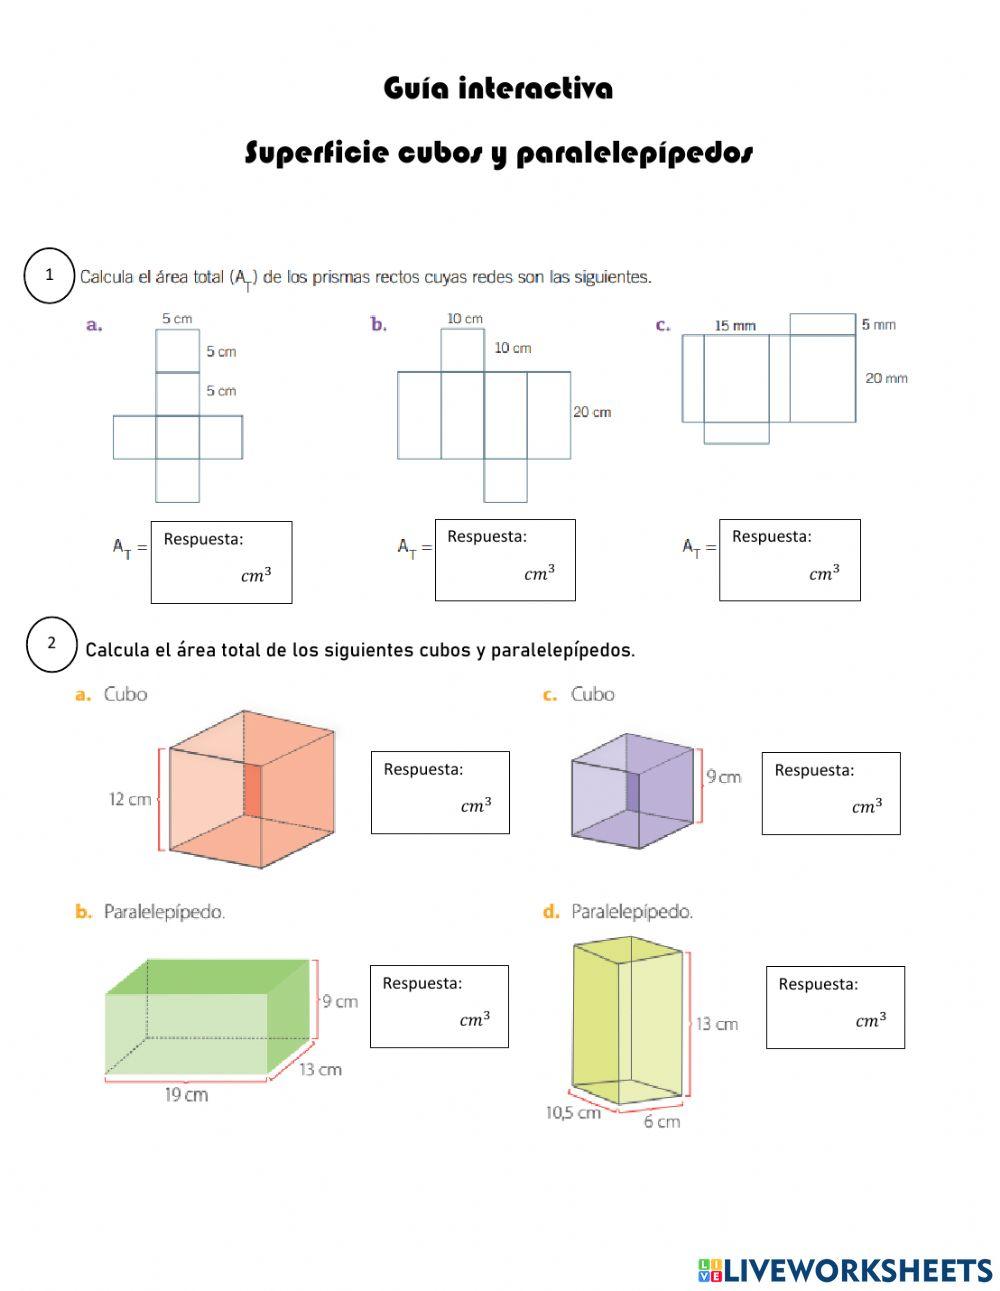 Superficie de cubos y paralelepípedos